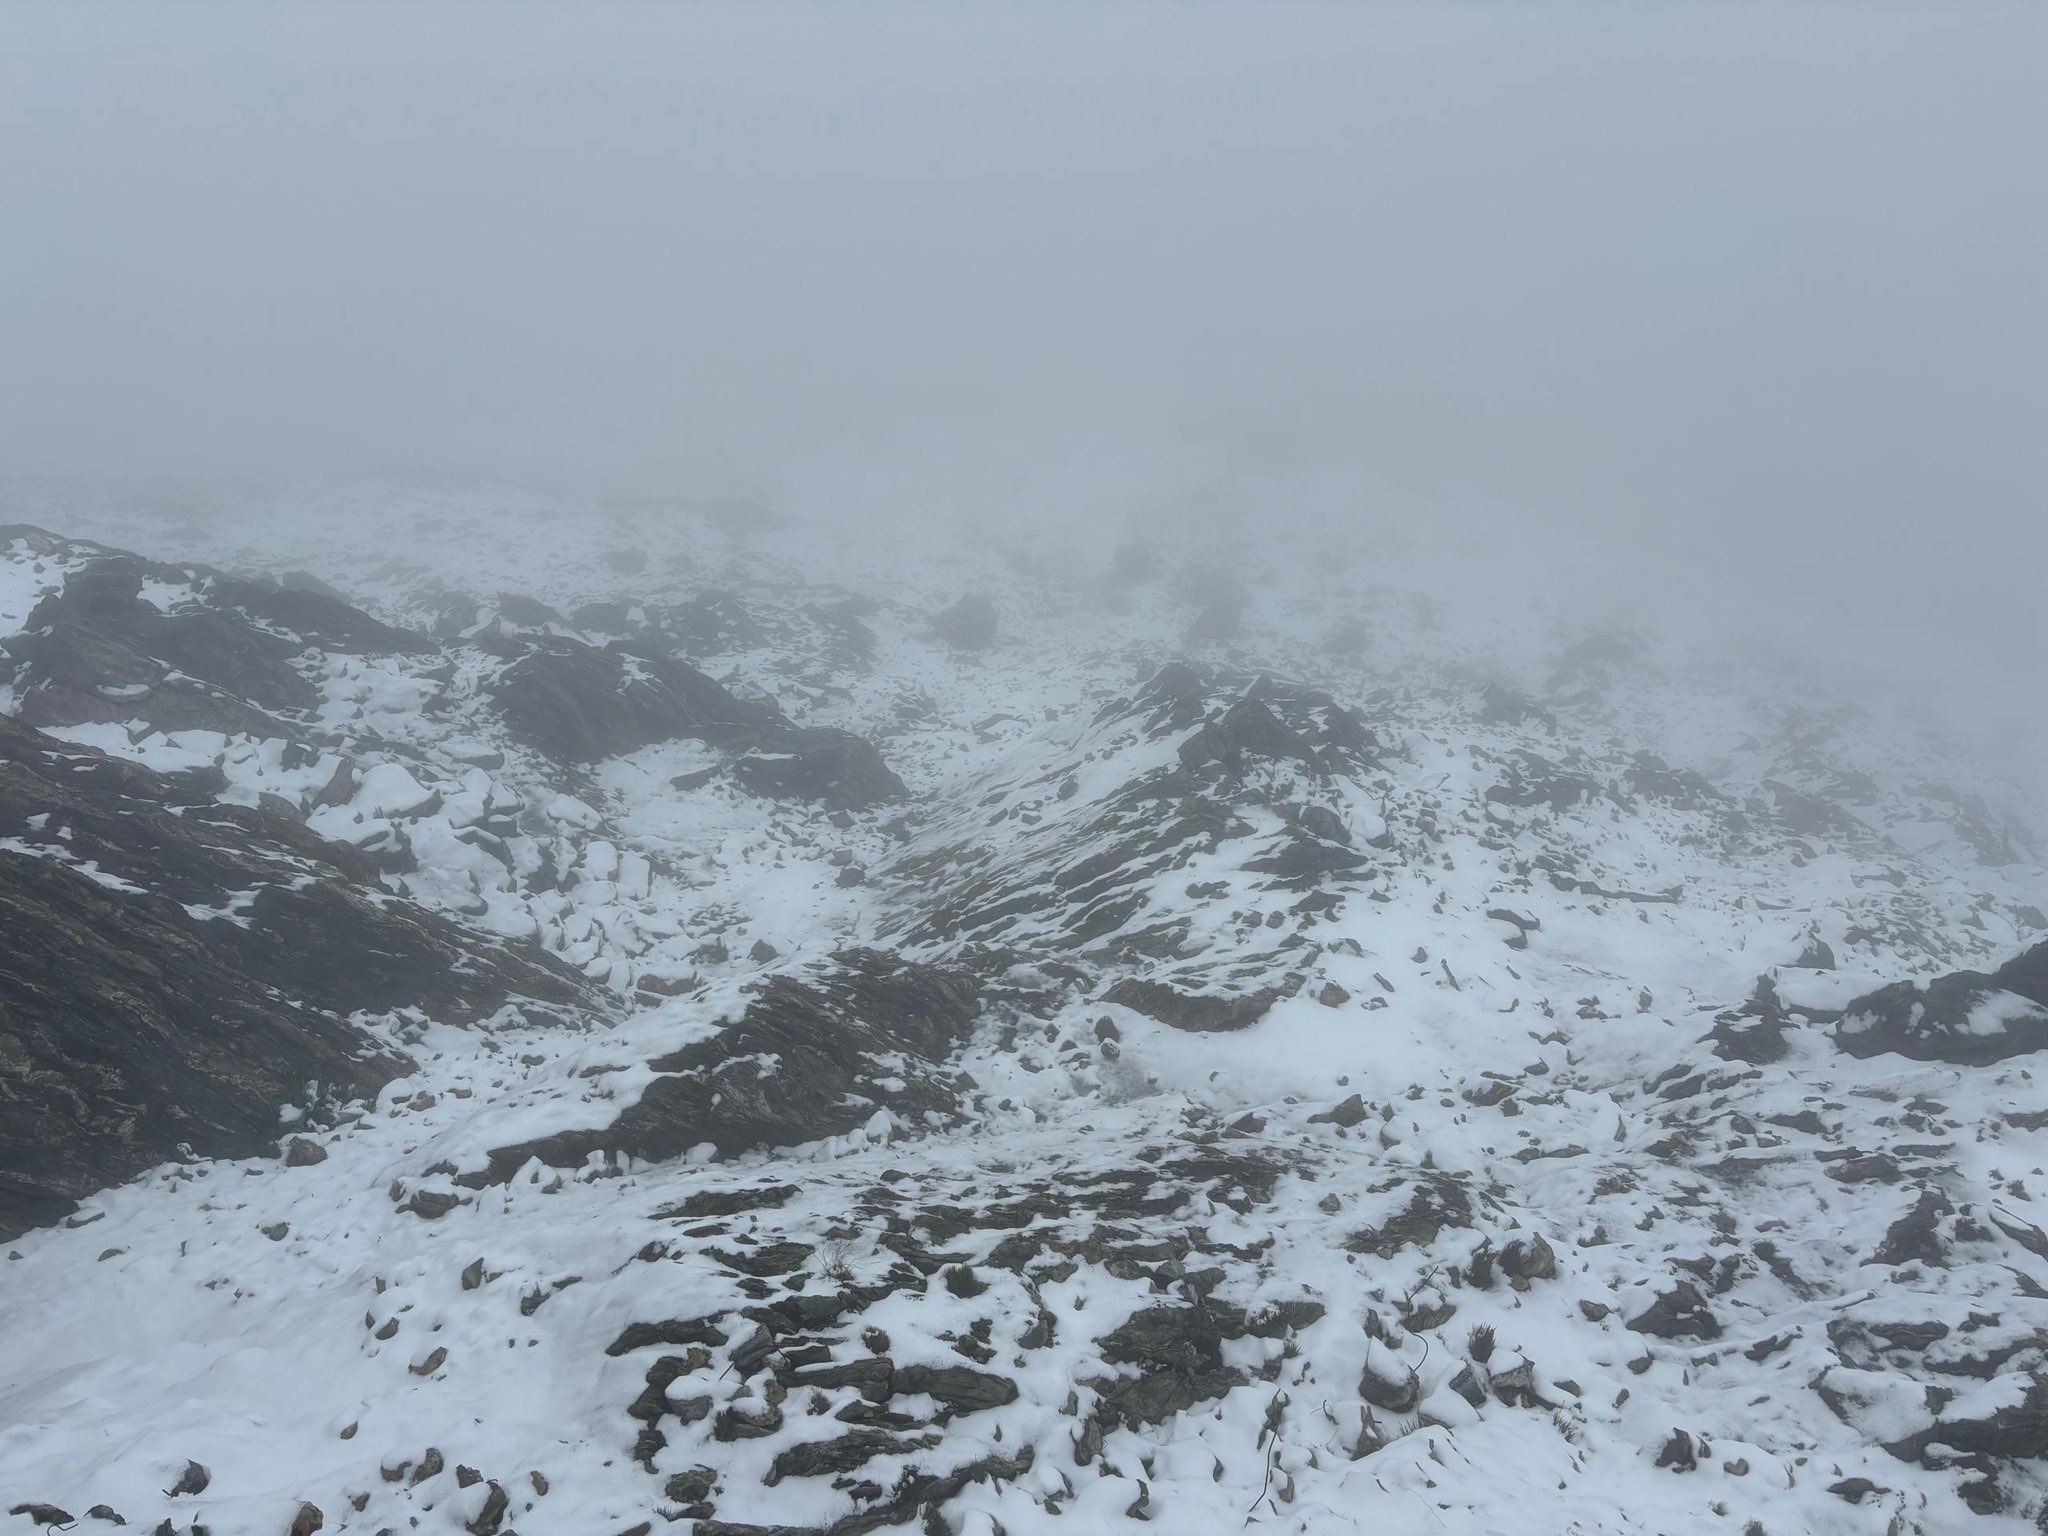 VIDEO: La espectacular nevada que cubrió de blanco al Pico Espejo en Mérida